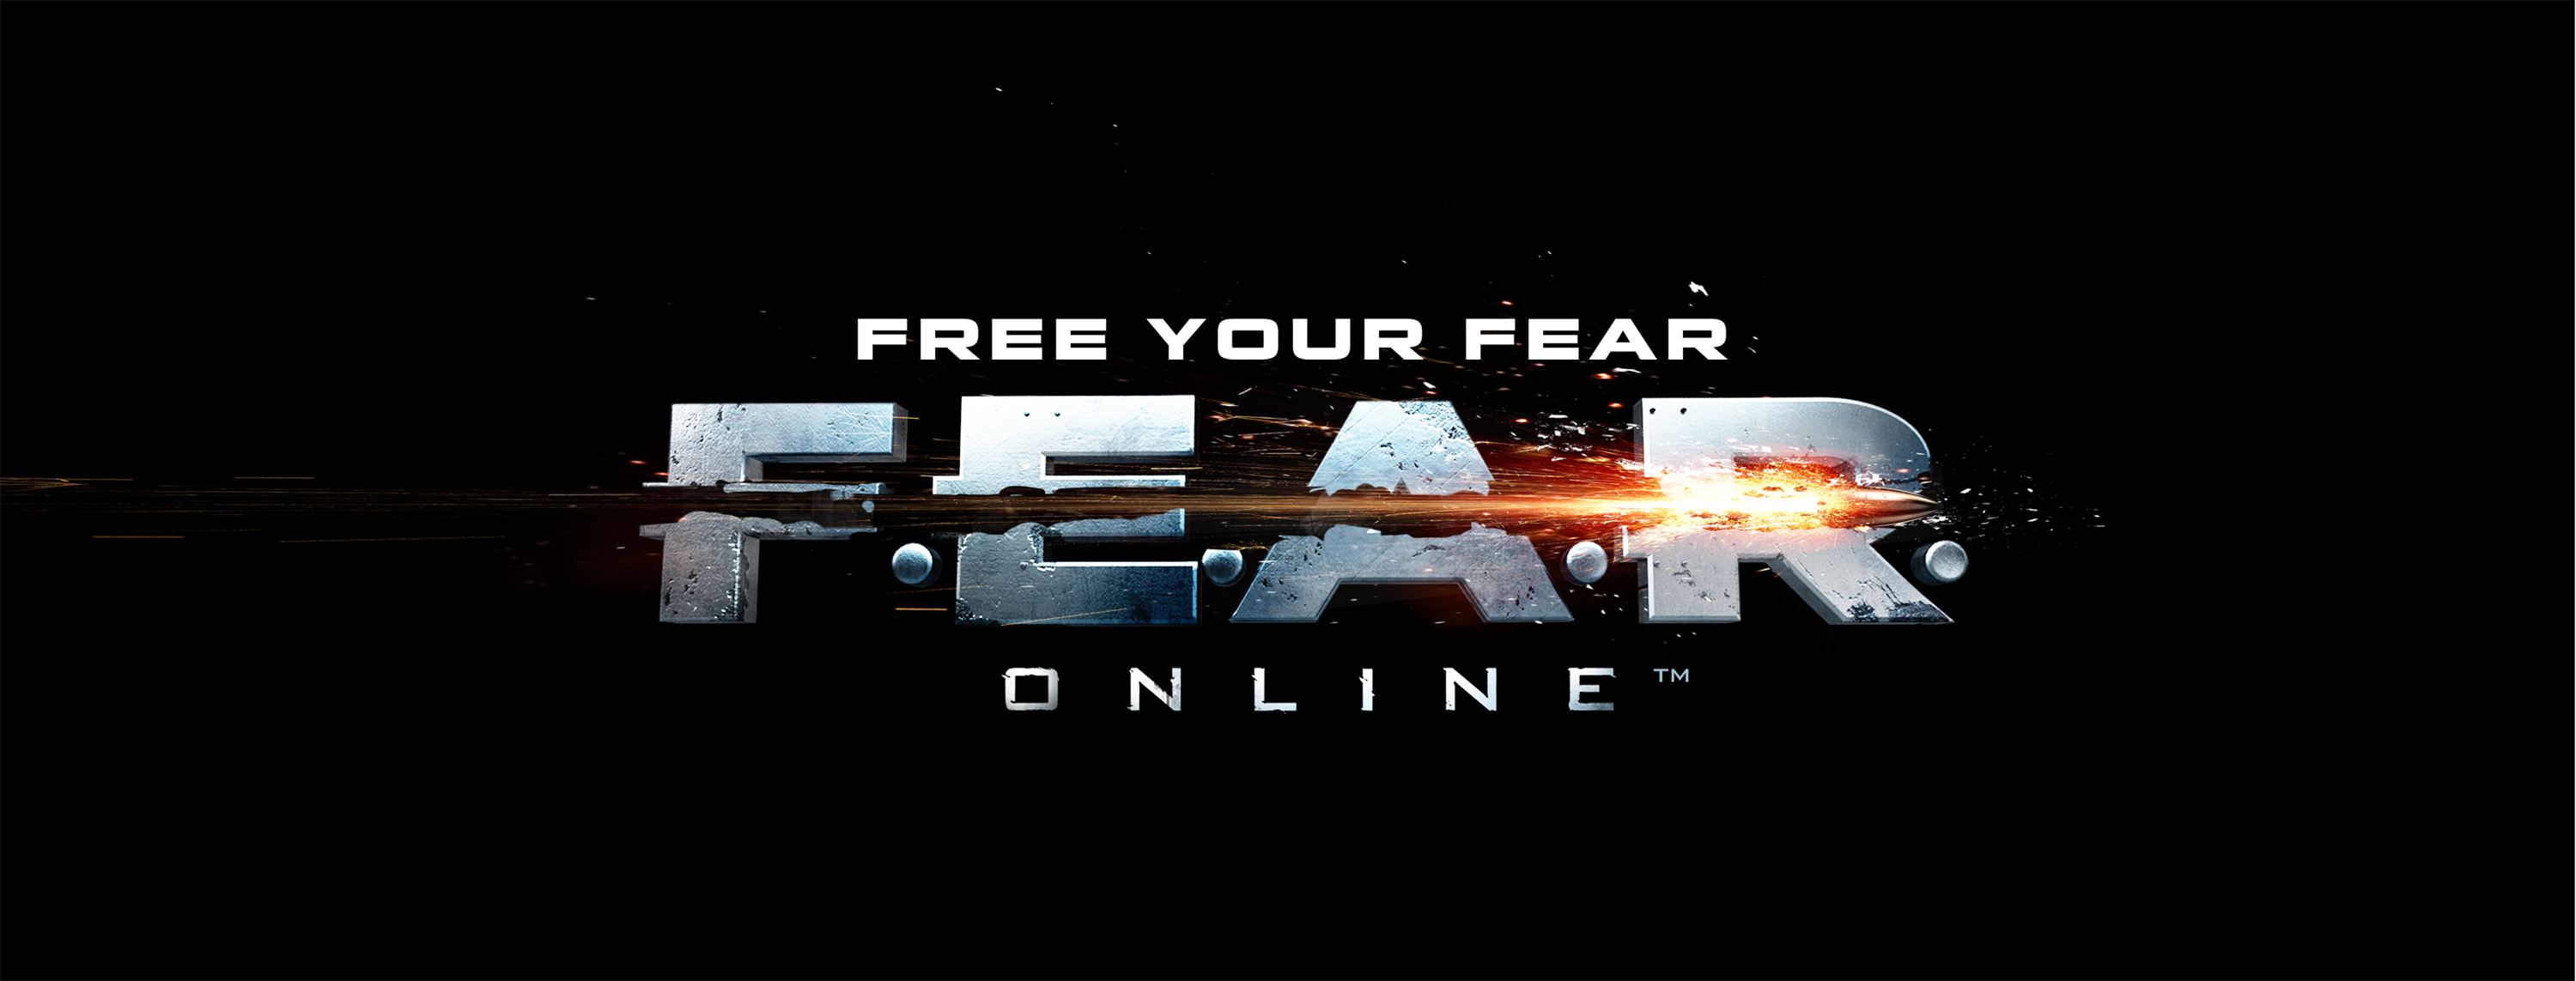 FEAR online